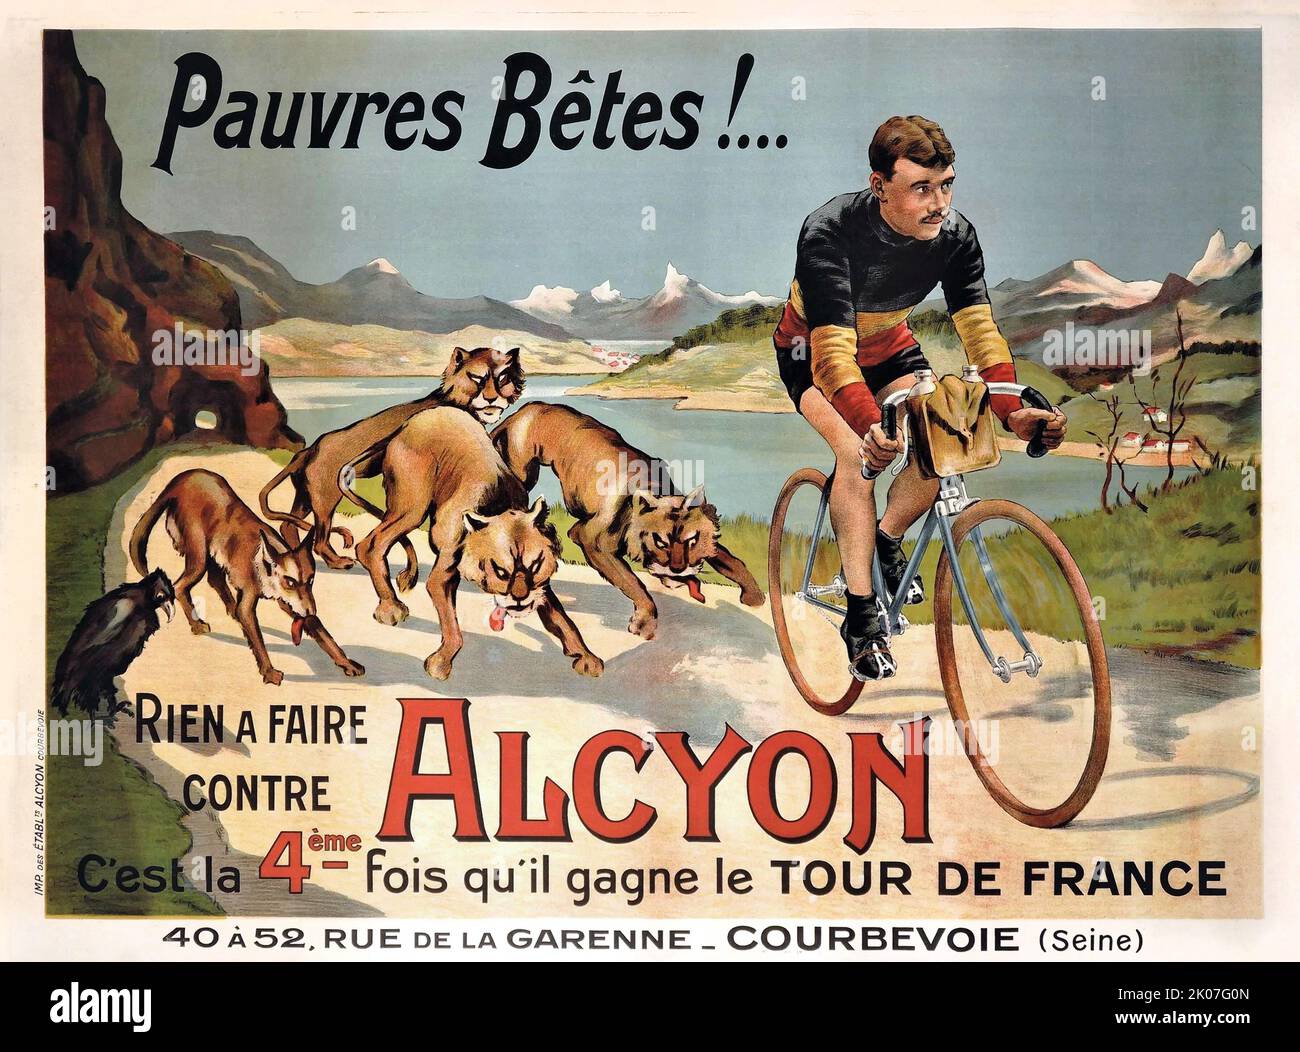 Affiche vintage pour - cycliste belge Odile Defraye membre de l'équipe de course d'Alcyon français. Gagnant du Tour de France, 1912 Banque D'Images